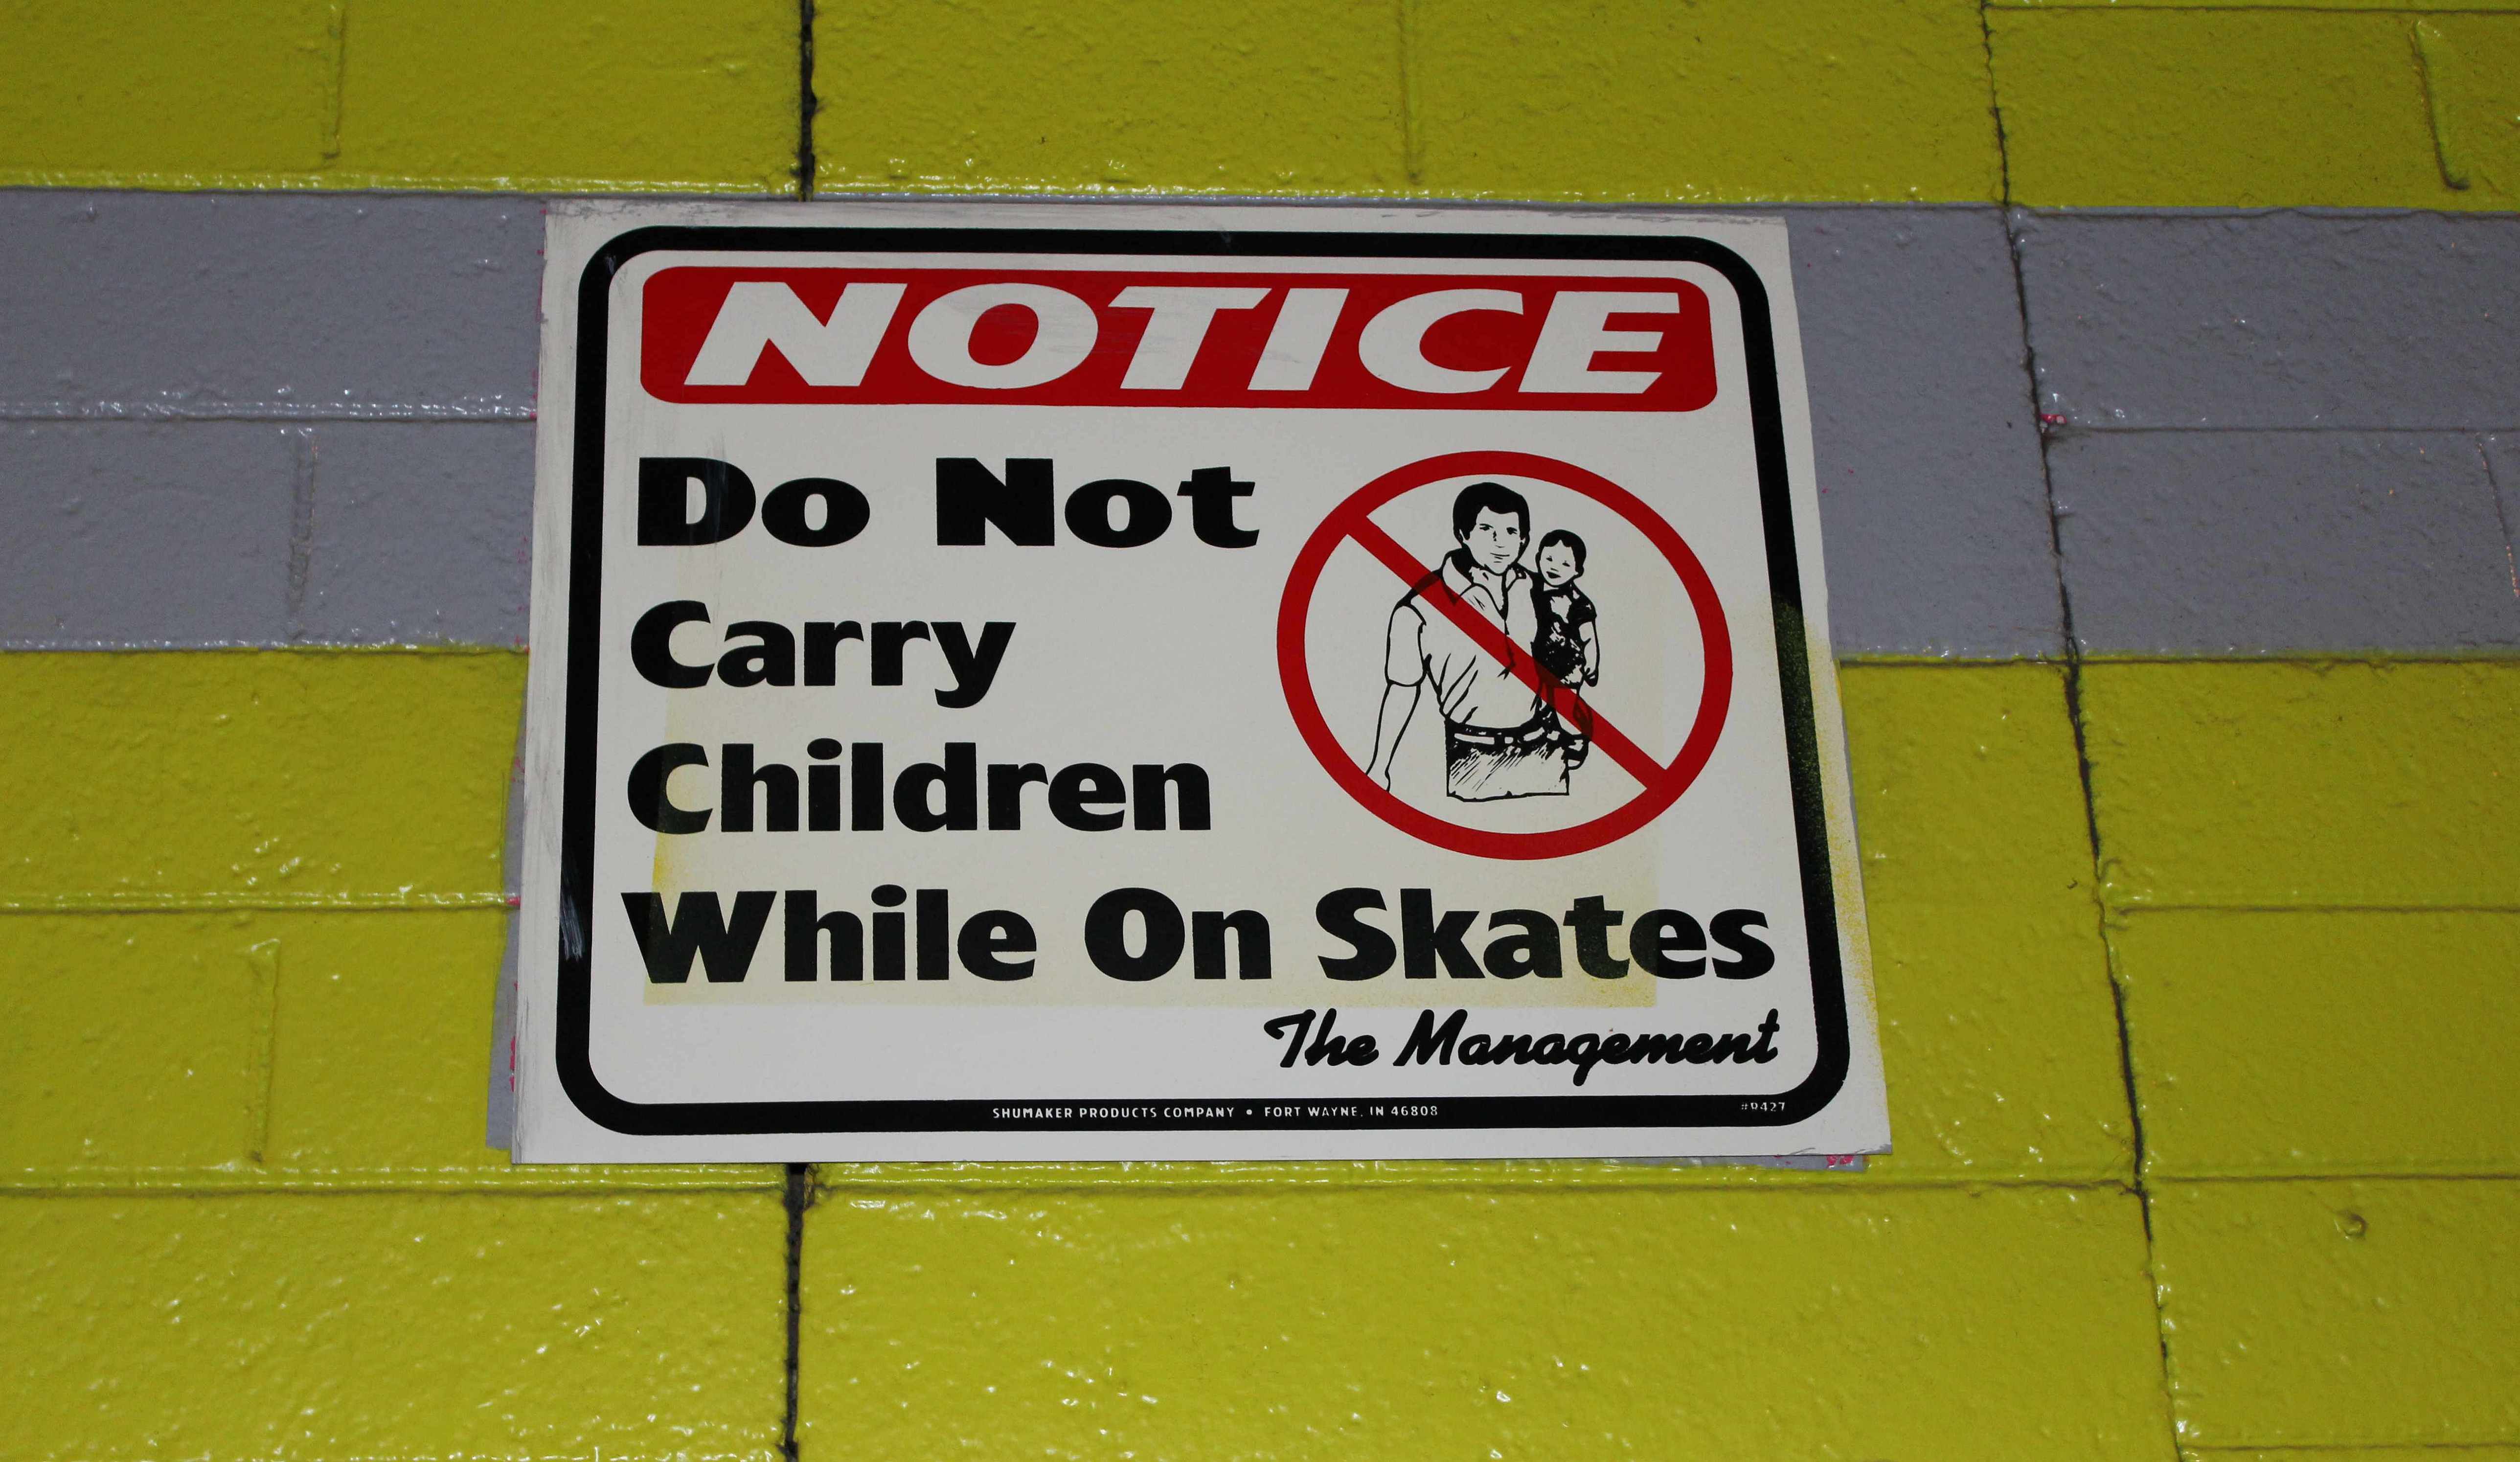 Skates in lying around in rink aisles is dangerous!